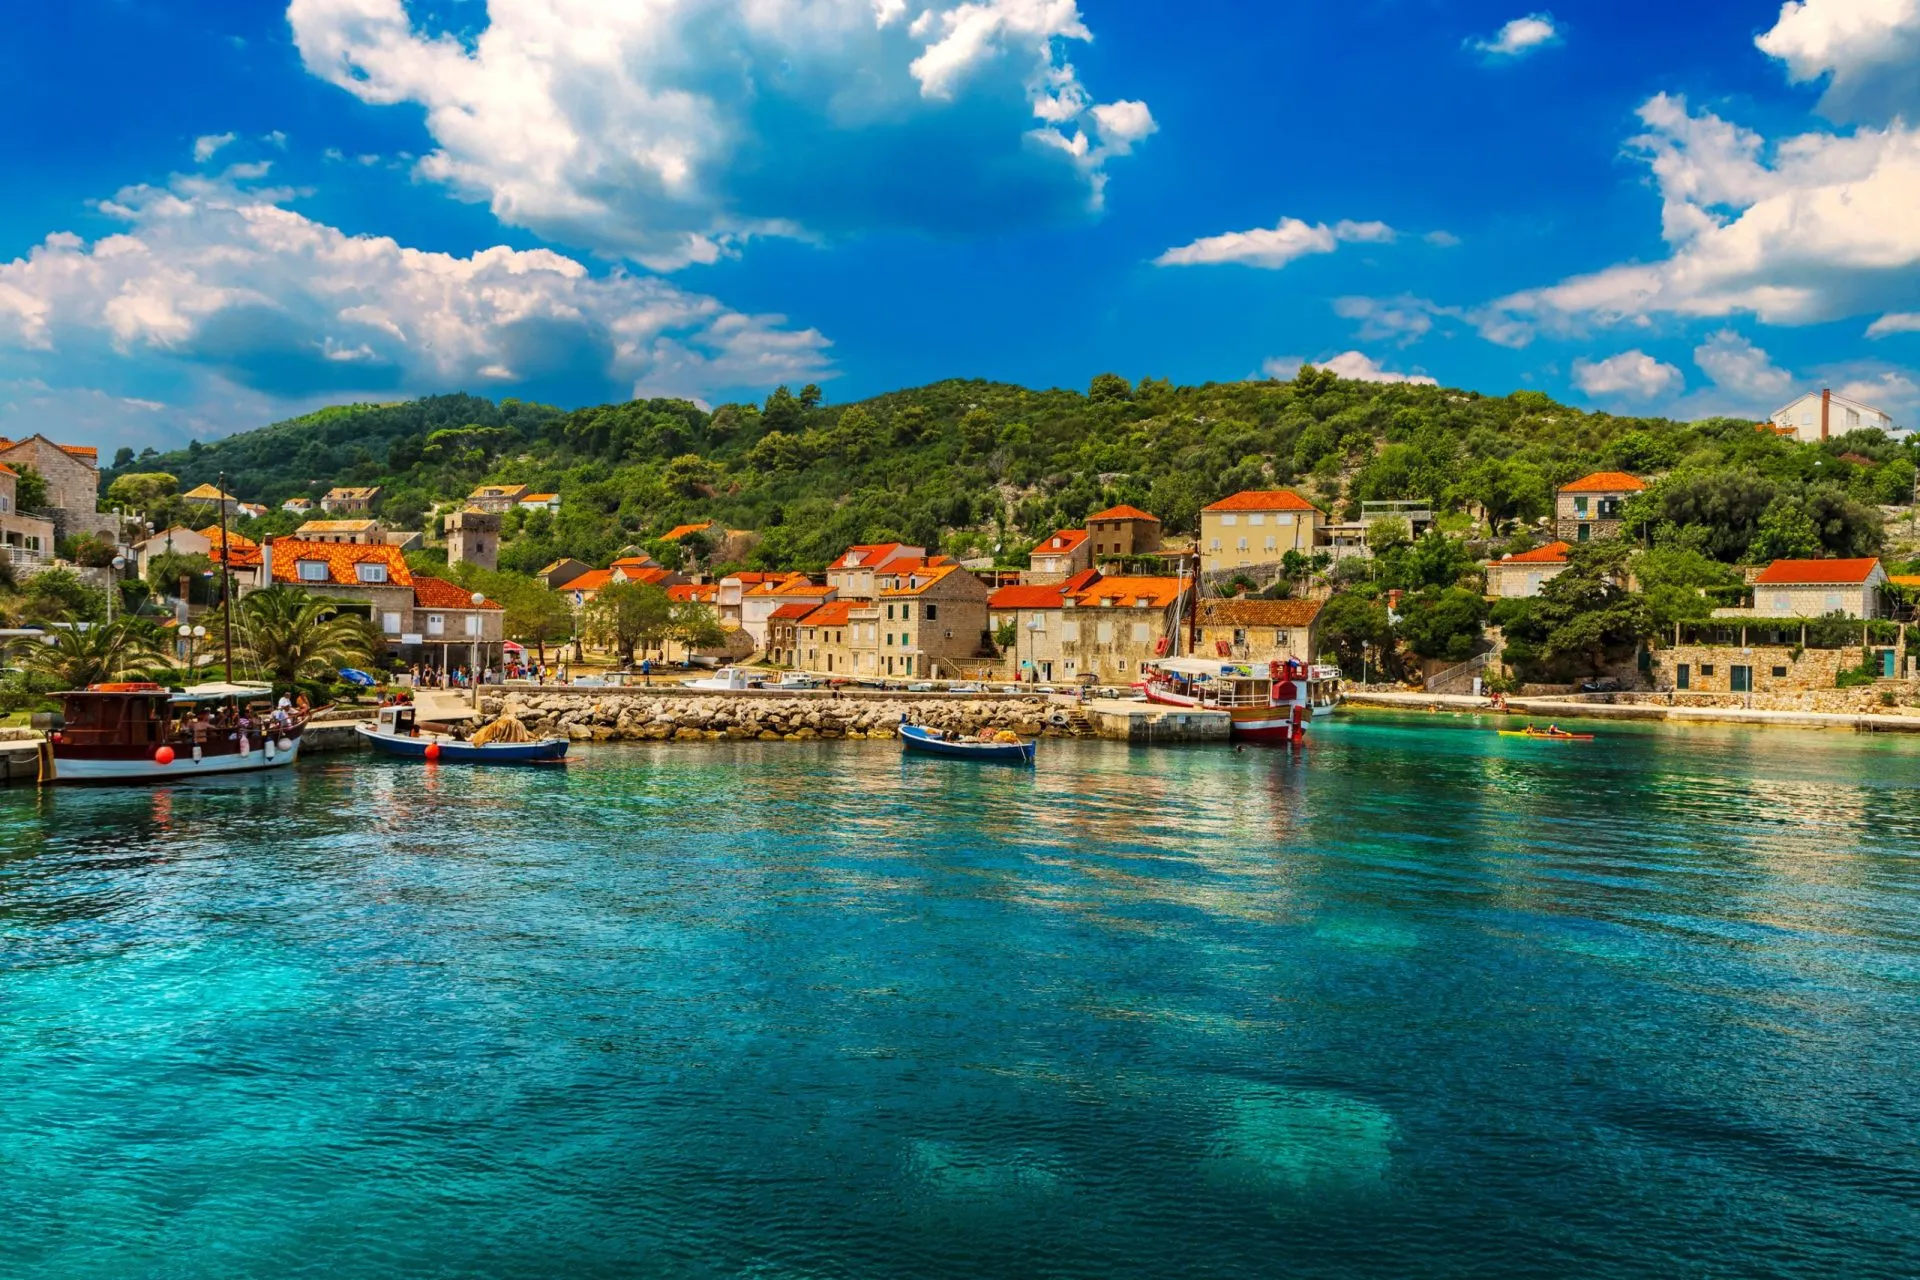 Croatia. South Dalmatia - Elaphiti Island. The island of Sipan (also Sipano, Giuppana) situated near Dubrovnik city. Sudurad (San Giorgio) settlement